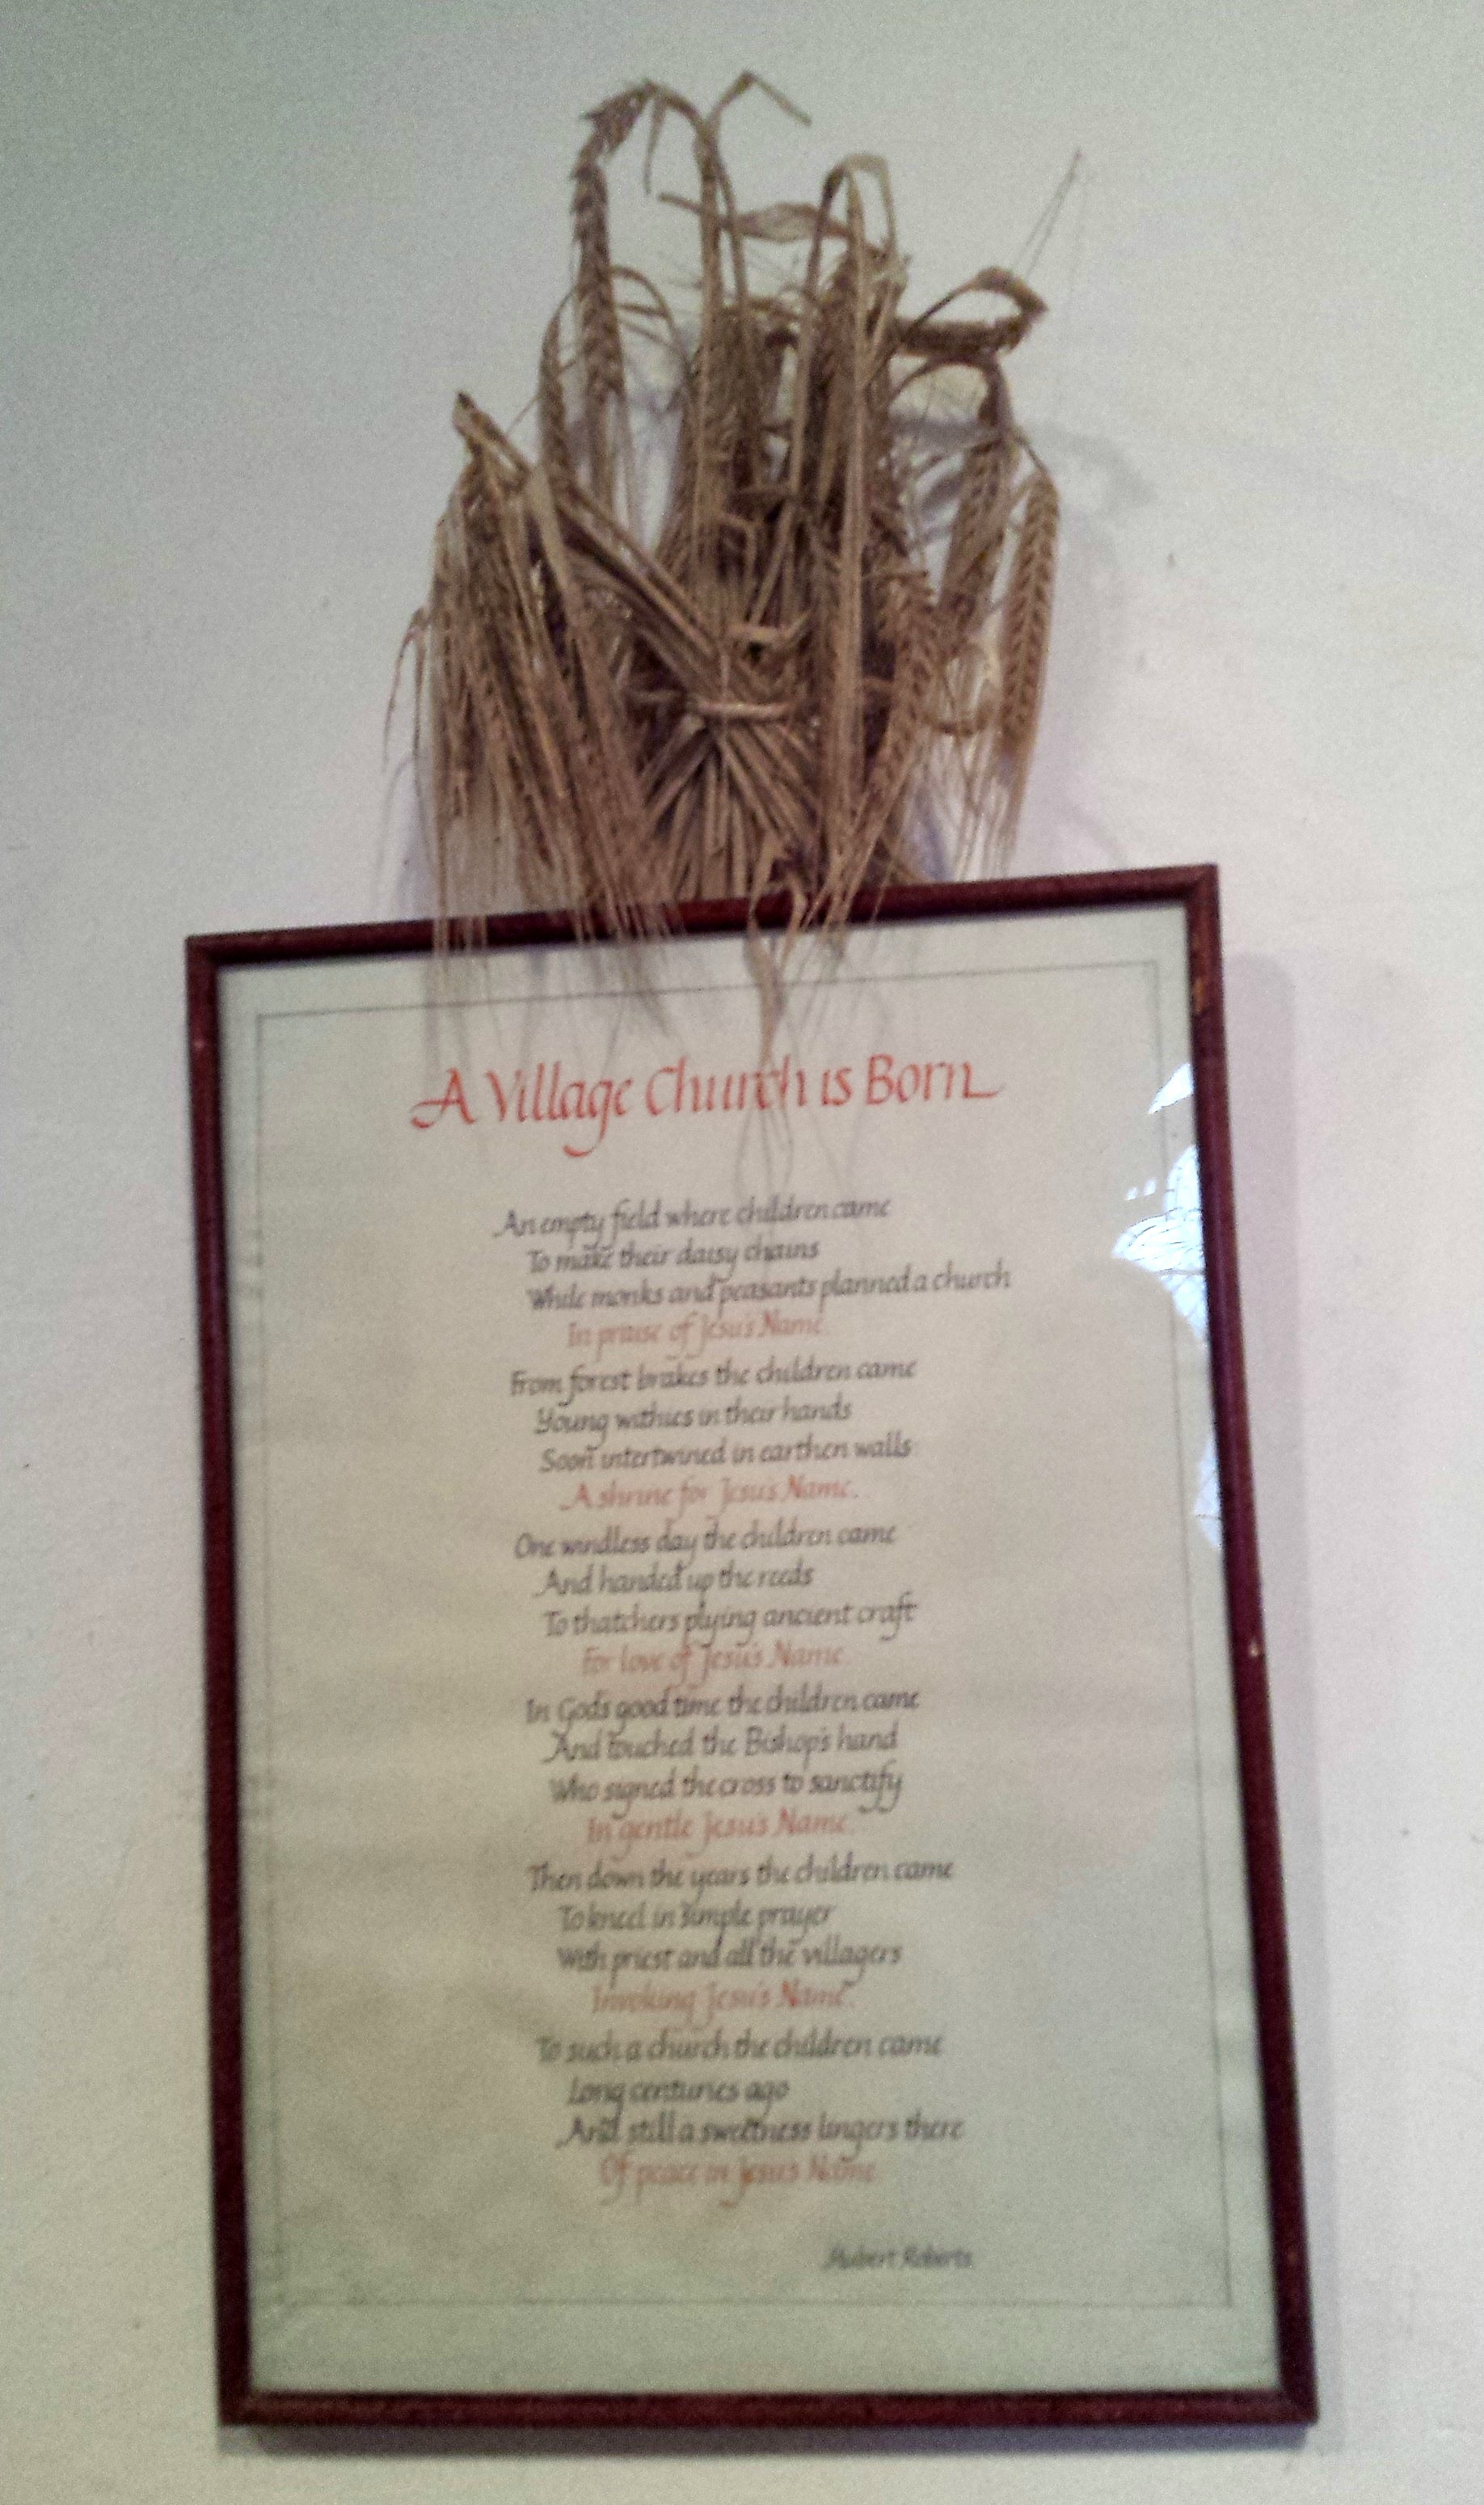 A Village Church is Born - poem in Binsted Church